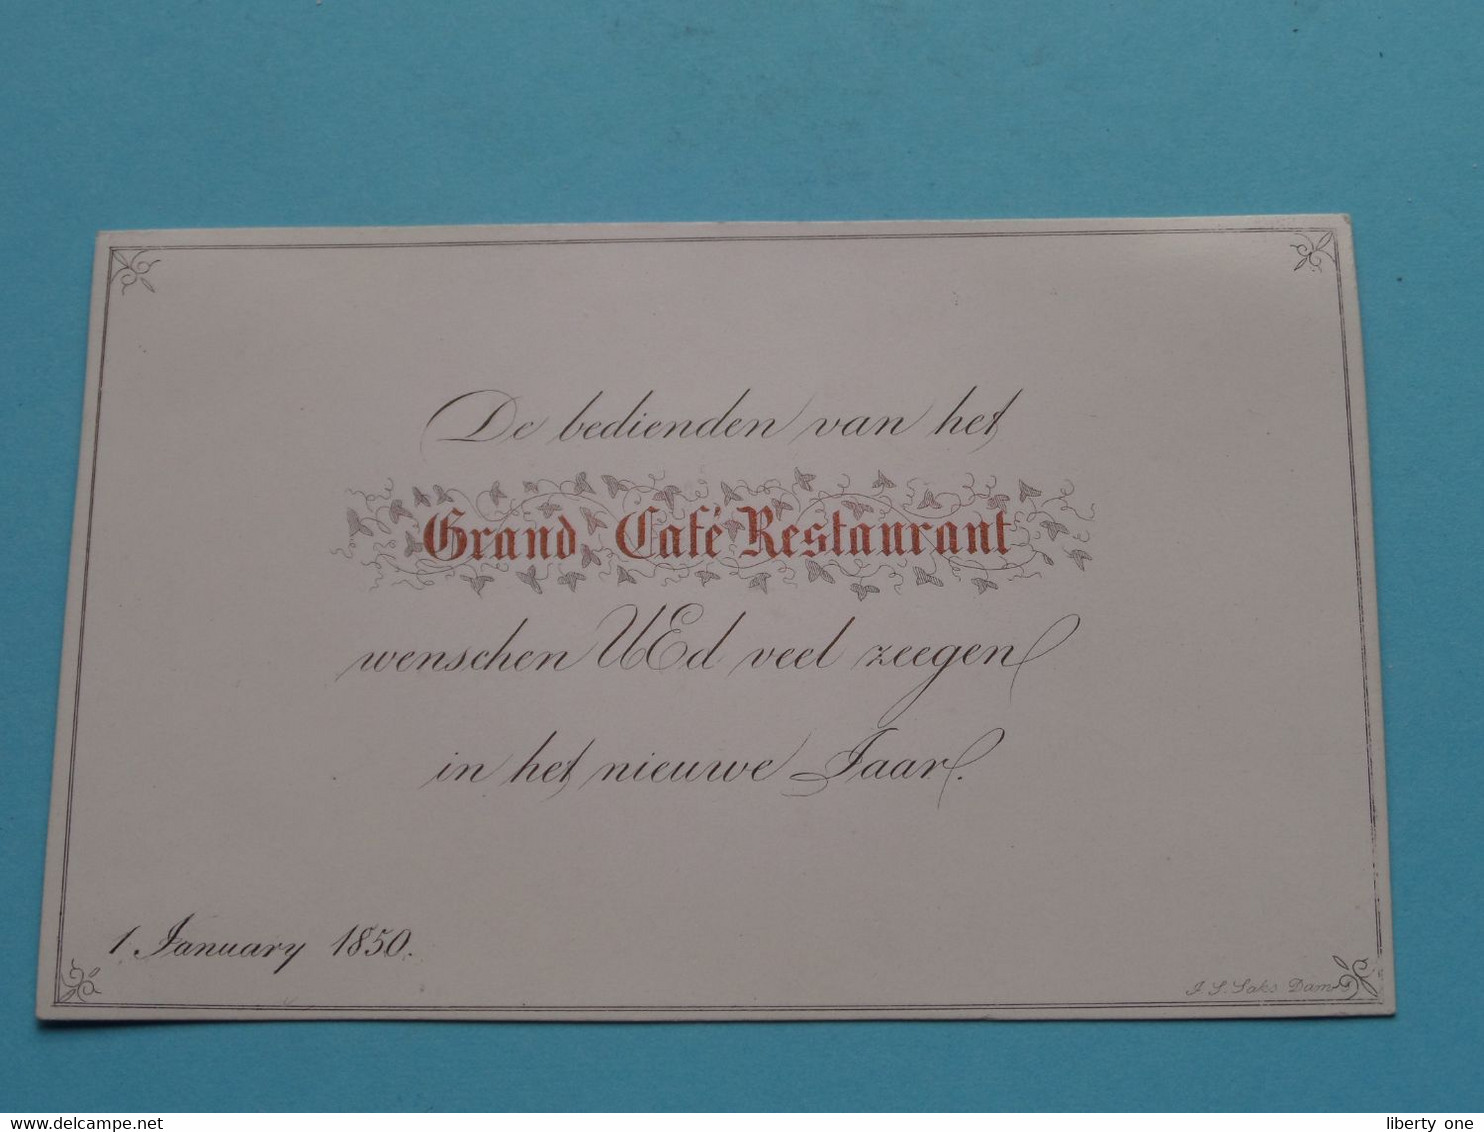 De Bedienden Van Het GRAND CAFE RESTAURANT Wenschen U >> 1 January 1850 ( Porcelein Porcelaine Porzellan ) SAKS ! - Cartes De Visite